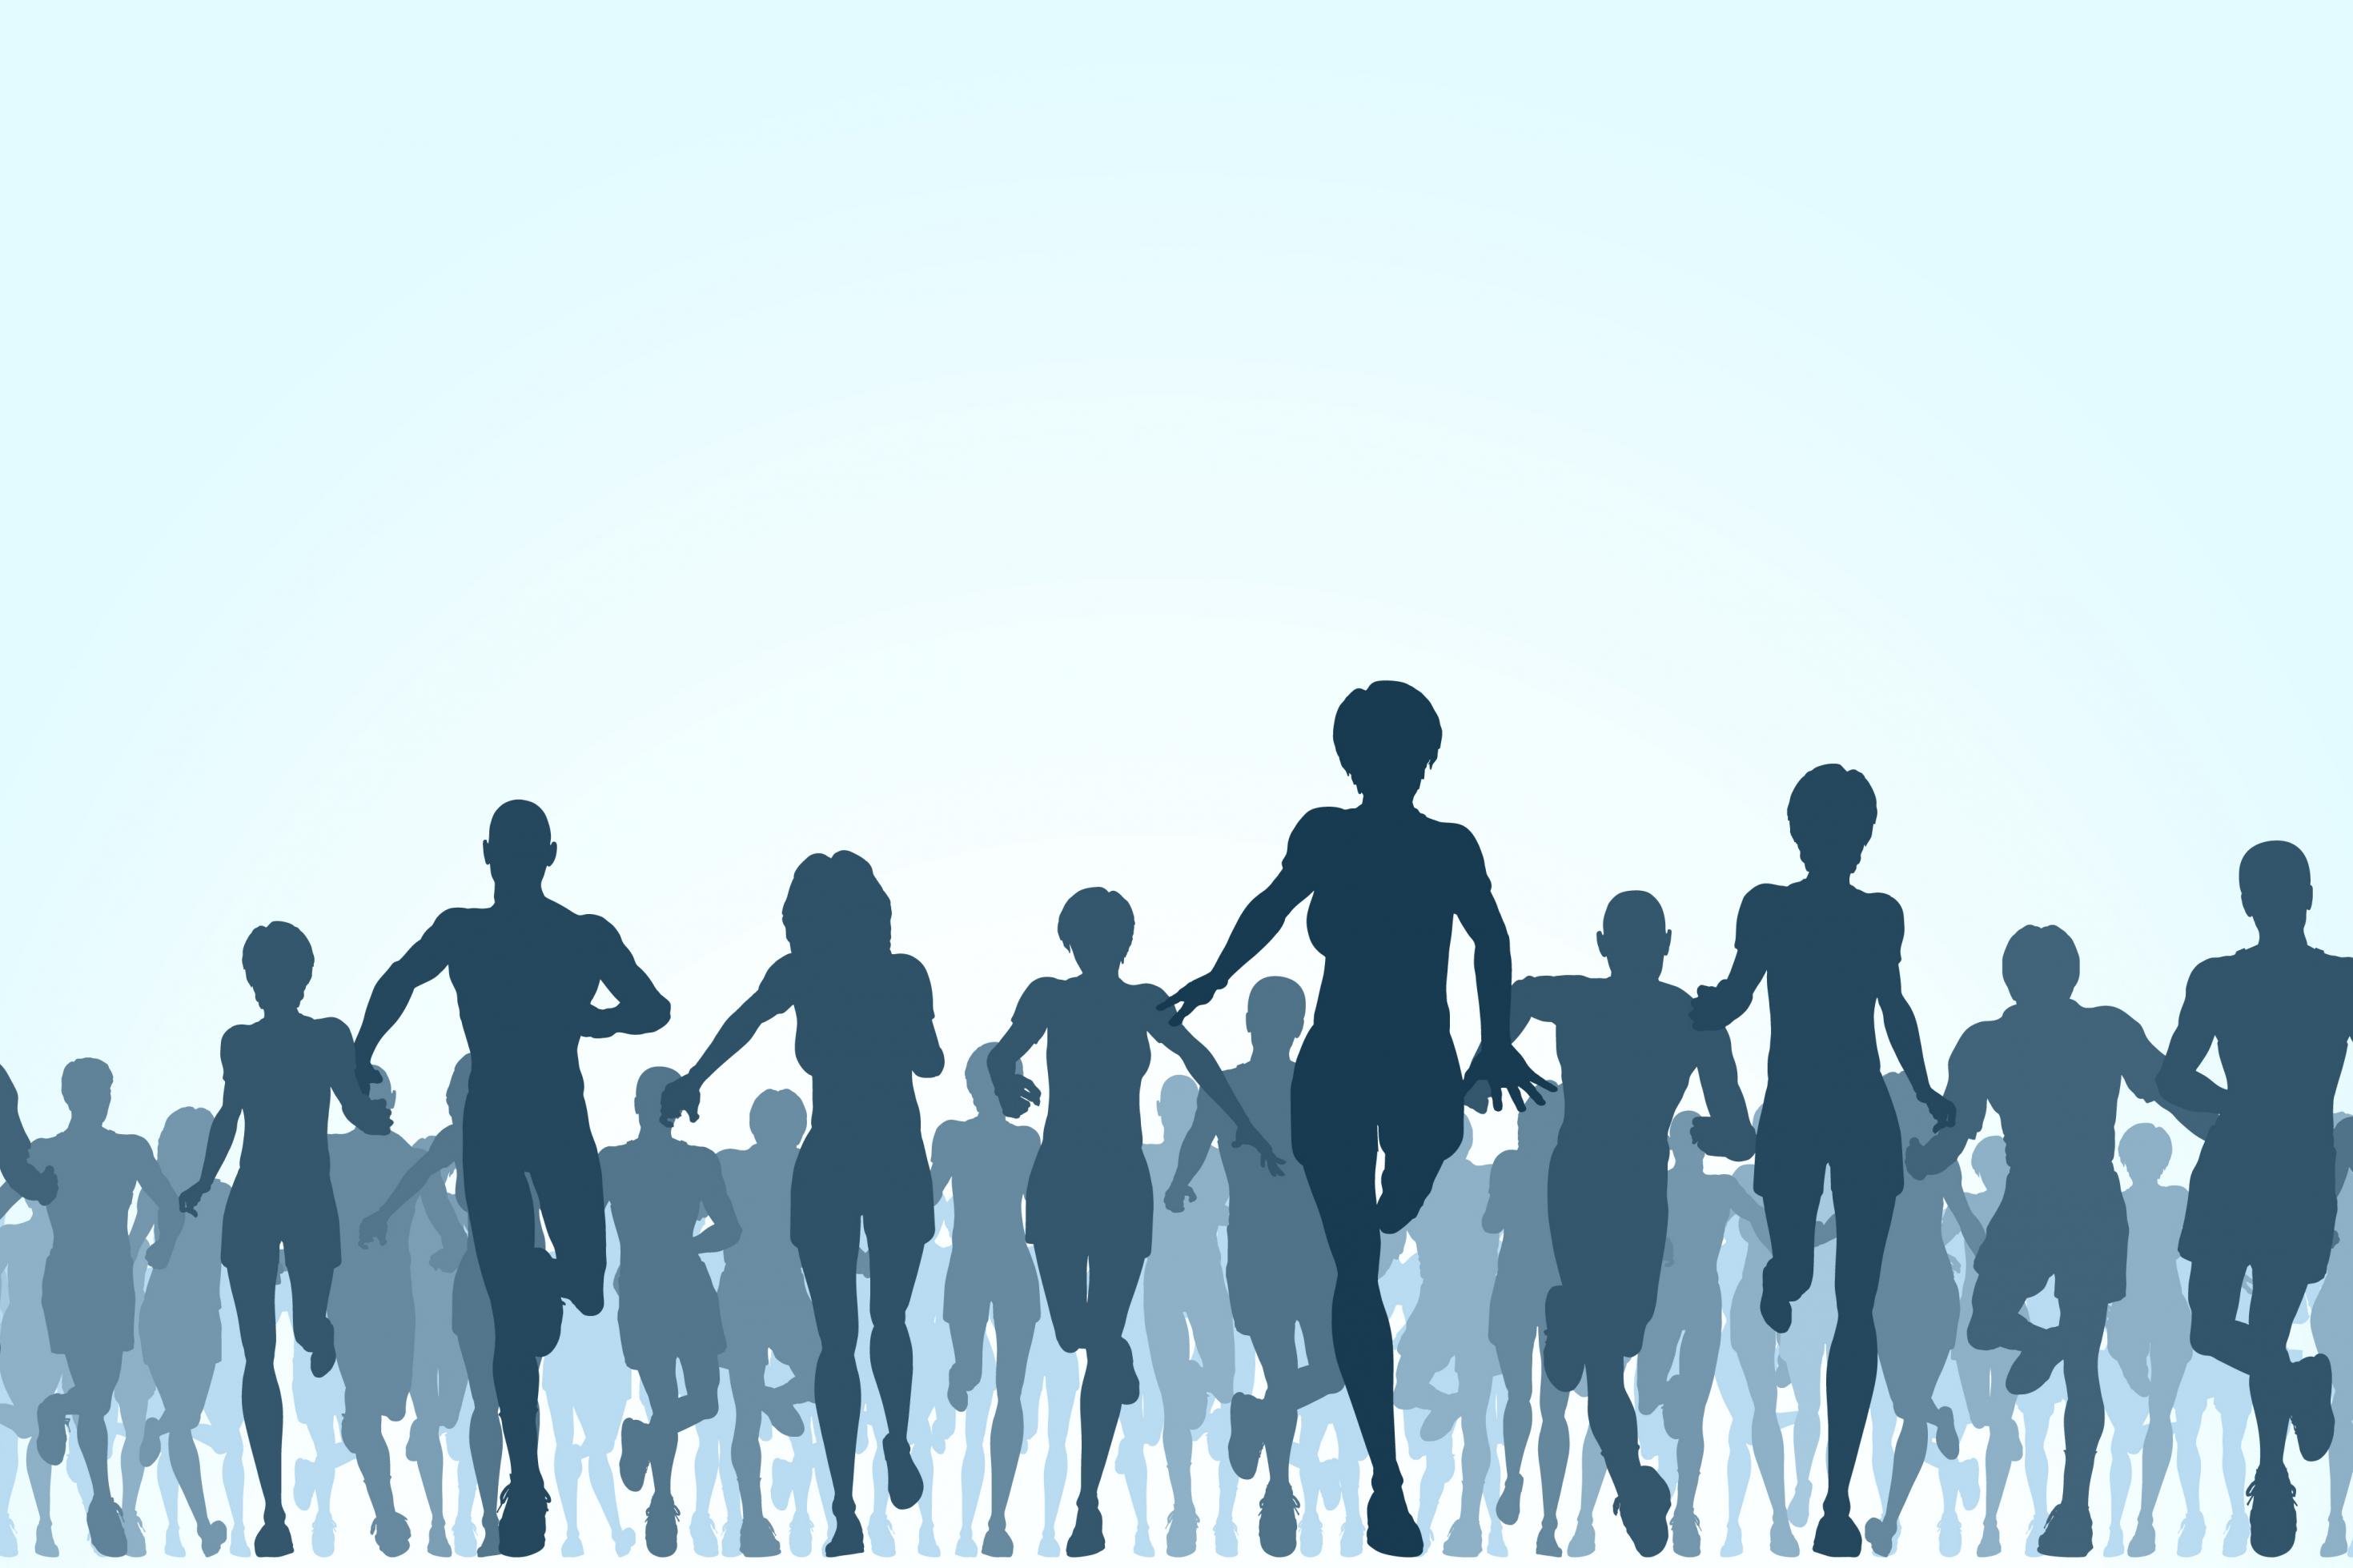 Die Illustration zeigt eine große Gruppe rennender Menschen.